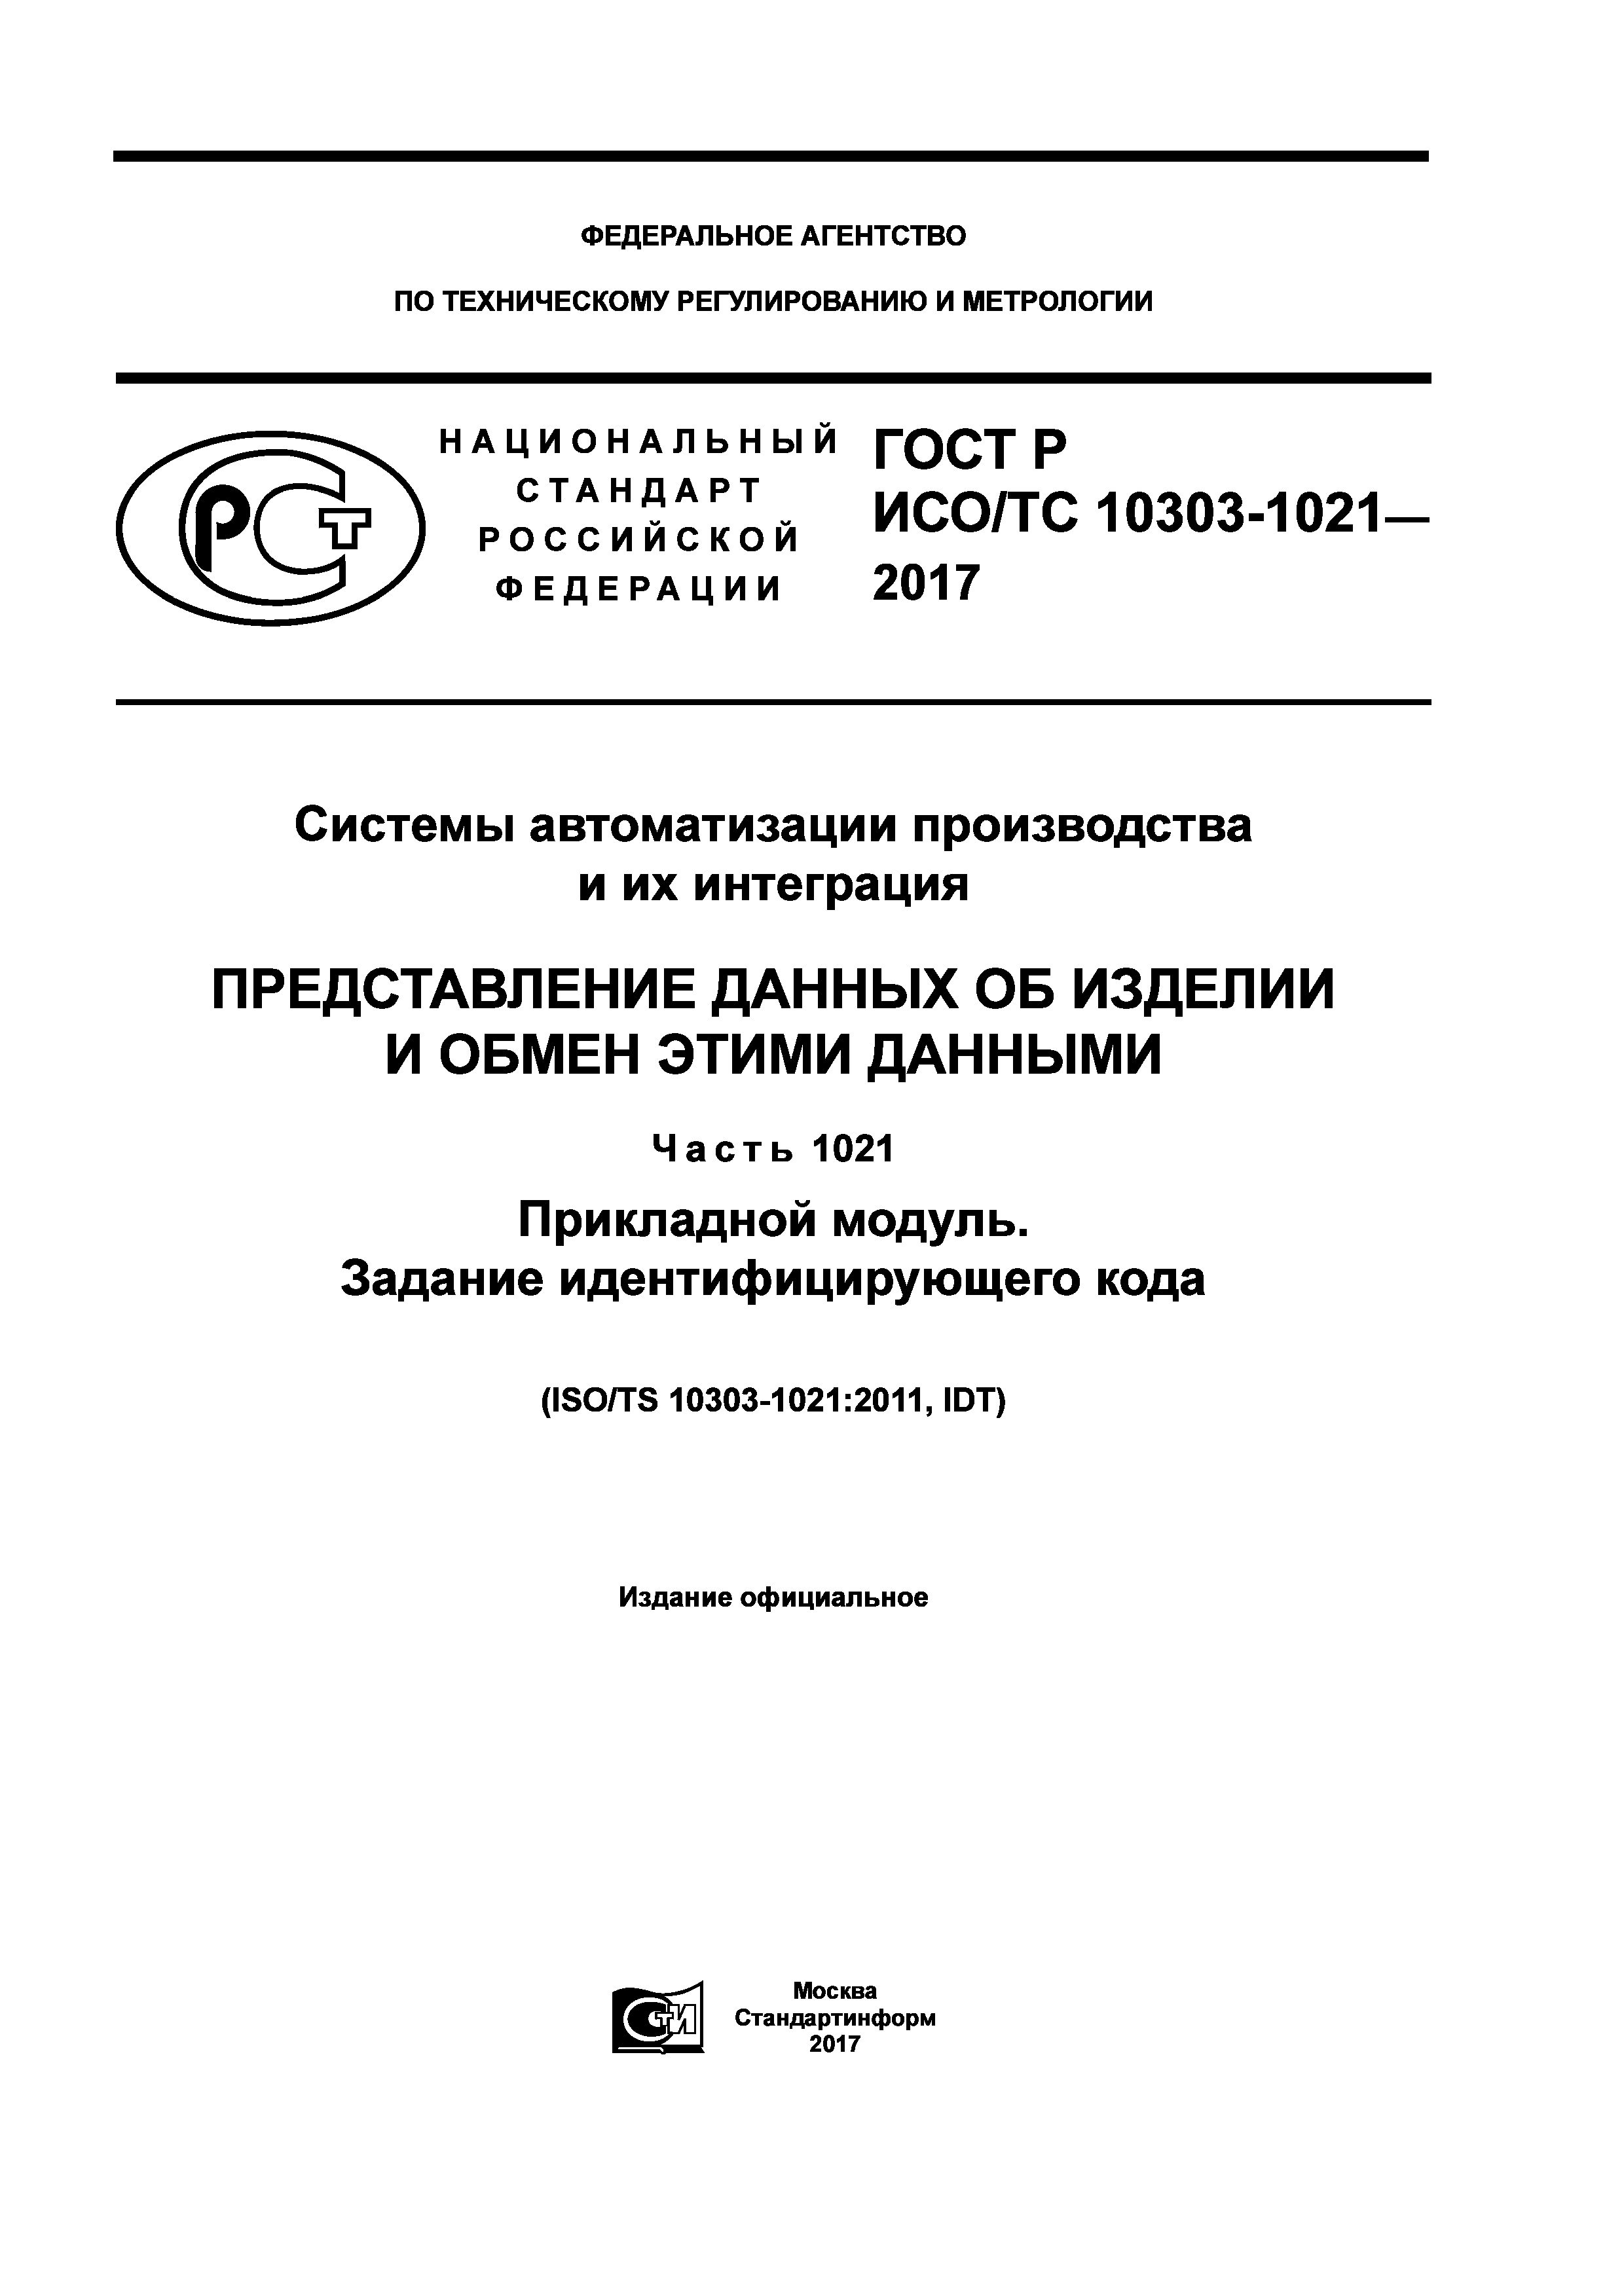 ГОСТ Р ИСО/ТС 10303-1021-2017